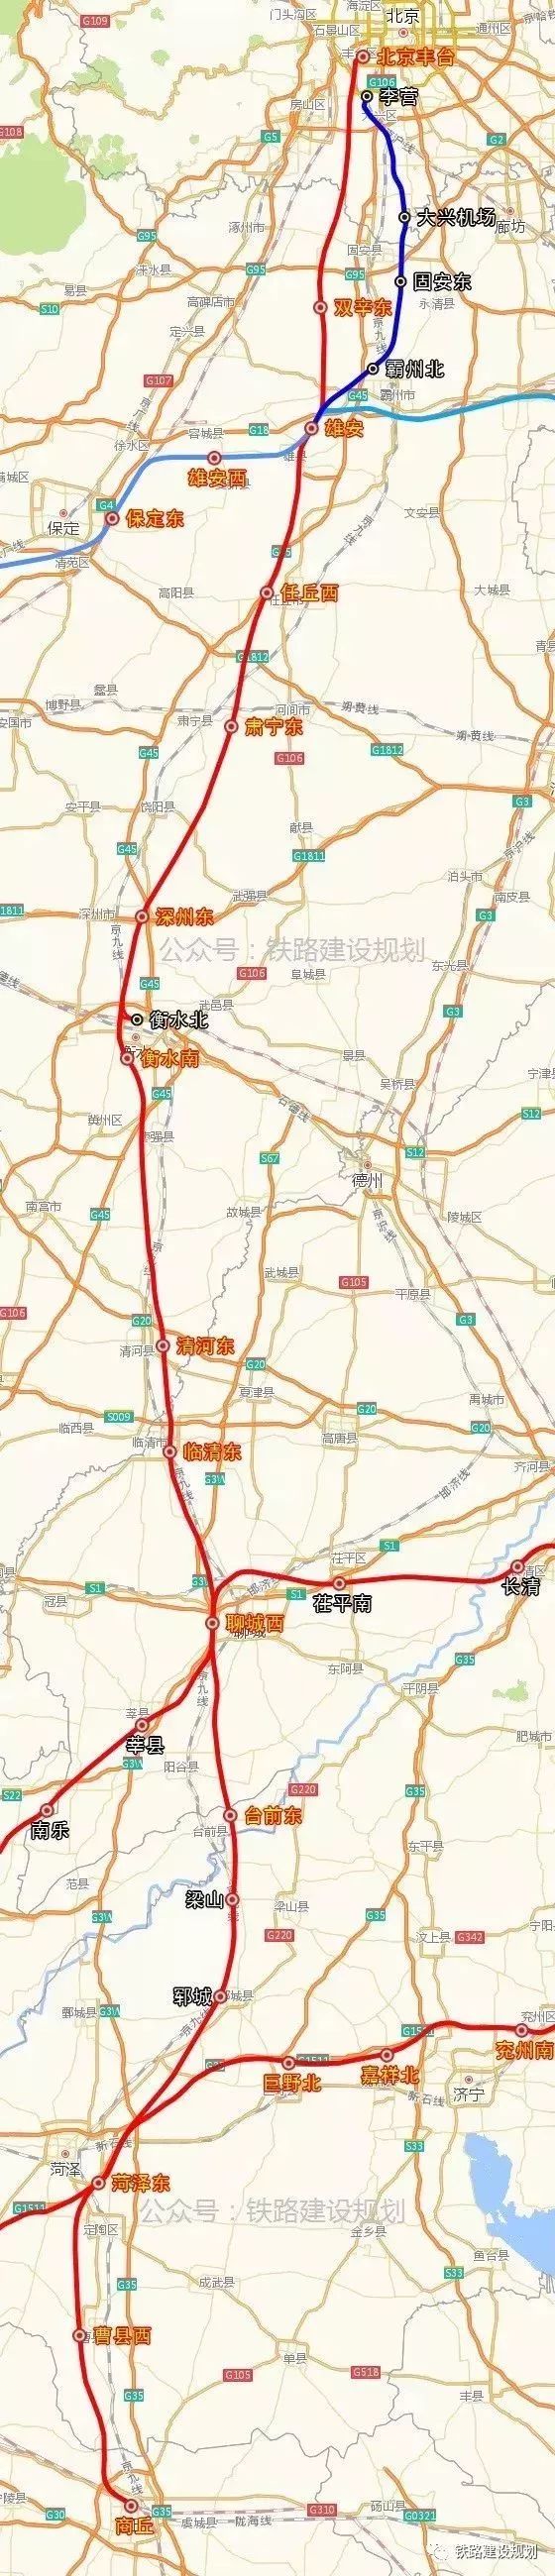 菏泽这个县将建设两座高铁站一次跨入高级别高铁时代